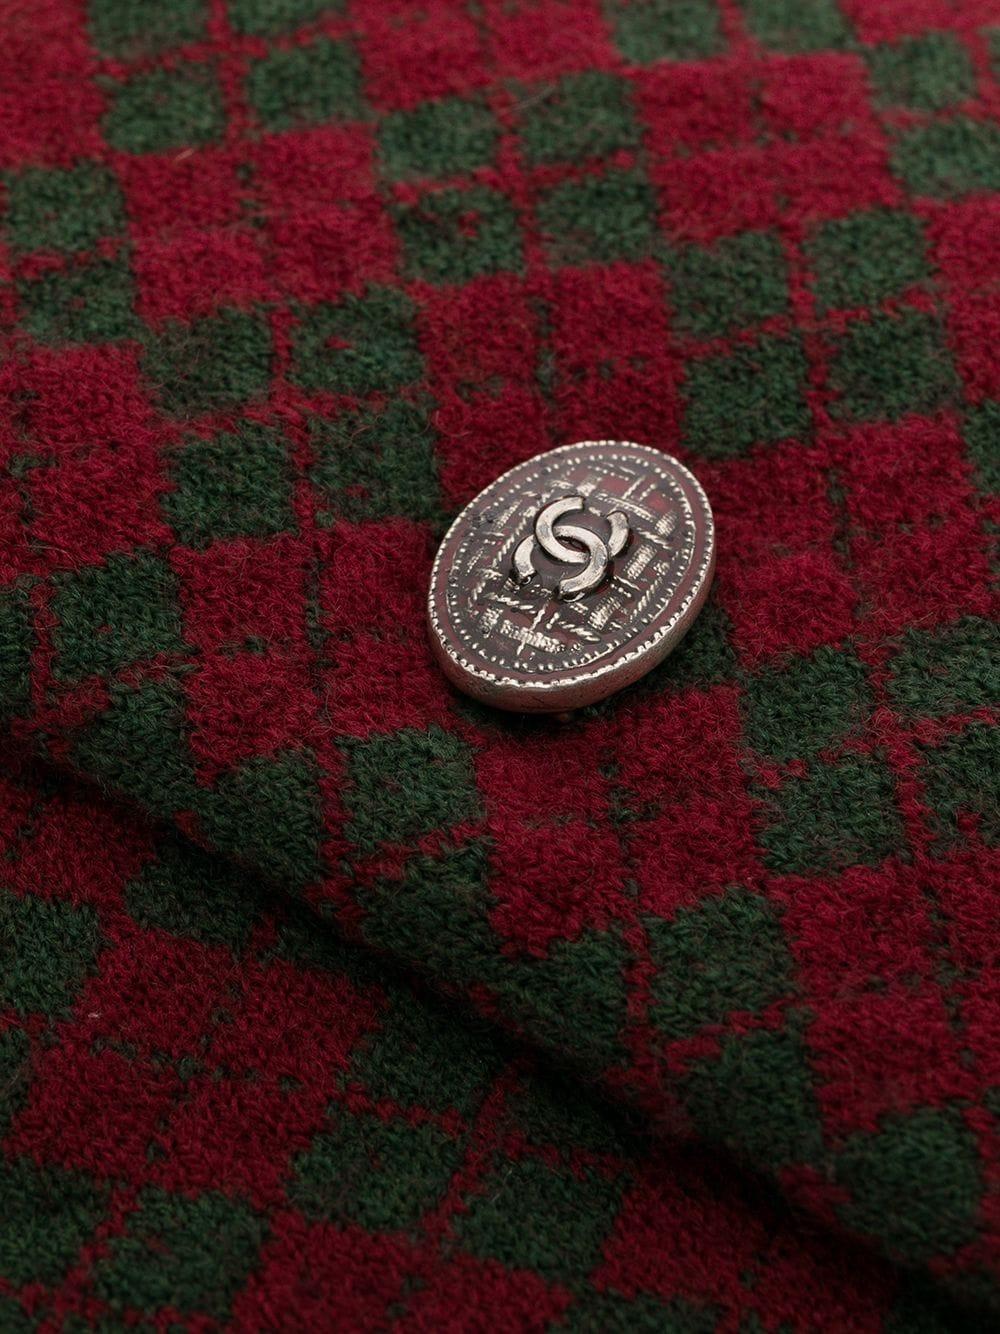 Diese langen Fäustlinge von Chanel sind aus 100% Wolle in einem charmanten und trendigen rot/grünen Schottenmuster gefertigt. Einfach perfekt für die kälteren Monate.

Farbe: Rot & Grün Tartan

Zusammensetzung: 100% Wolle

Zustand: Hervorragender